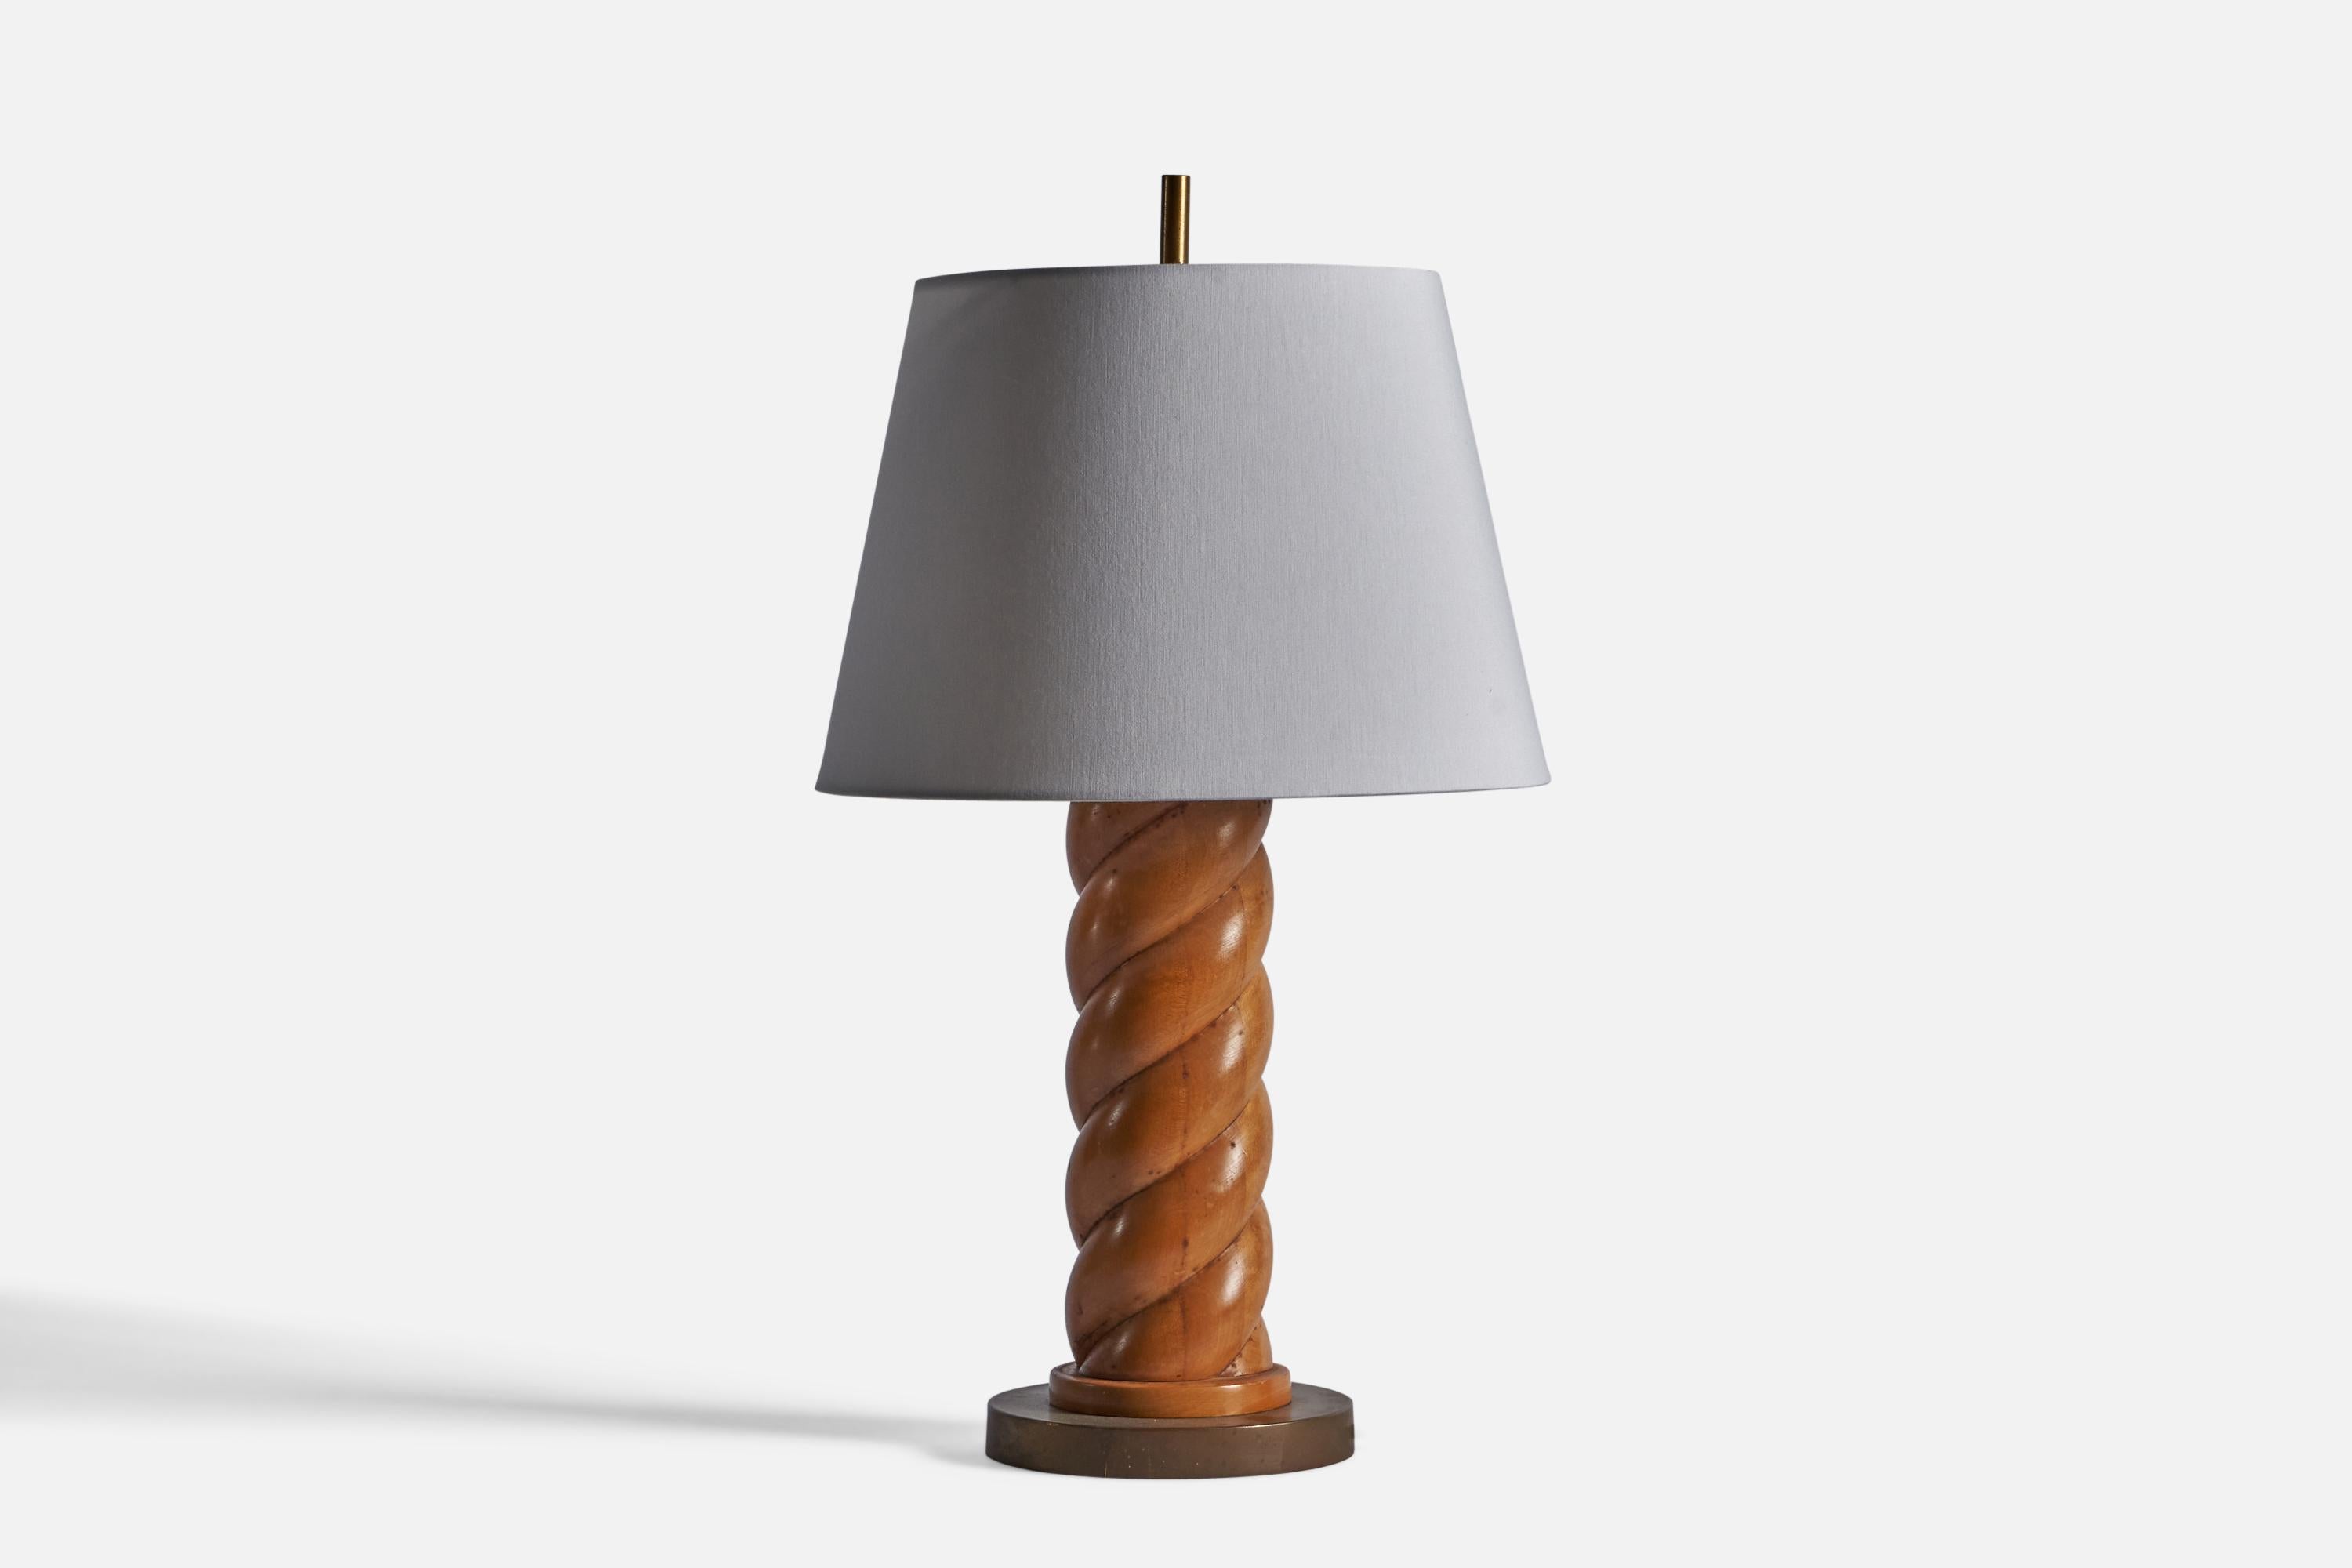 Lampe de table en chêne et en laiton, conçue et produite aux États-Unis, années 1950.

Dimensions de la lampe (pouces) : 25